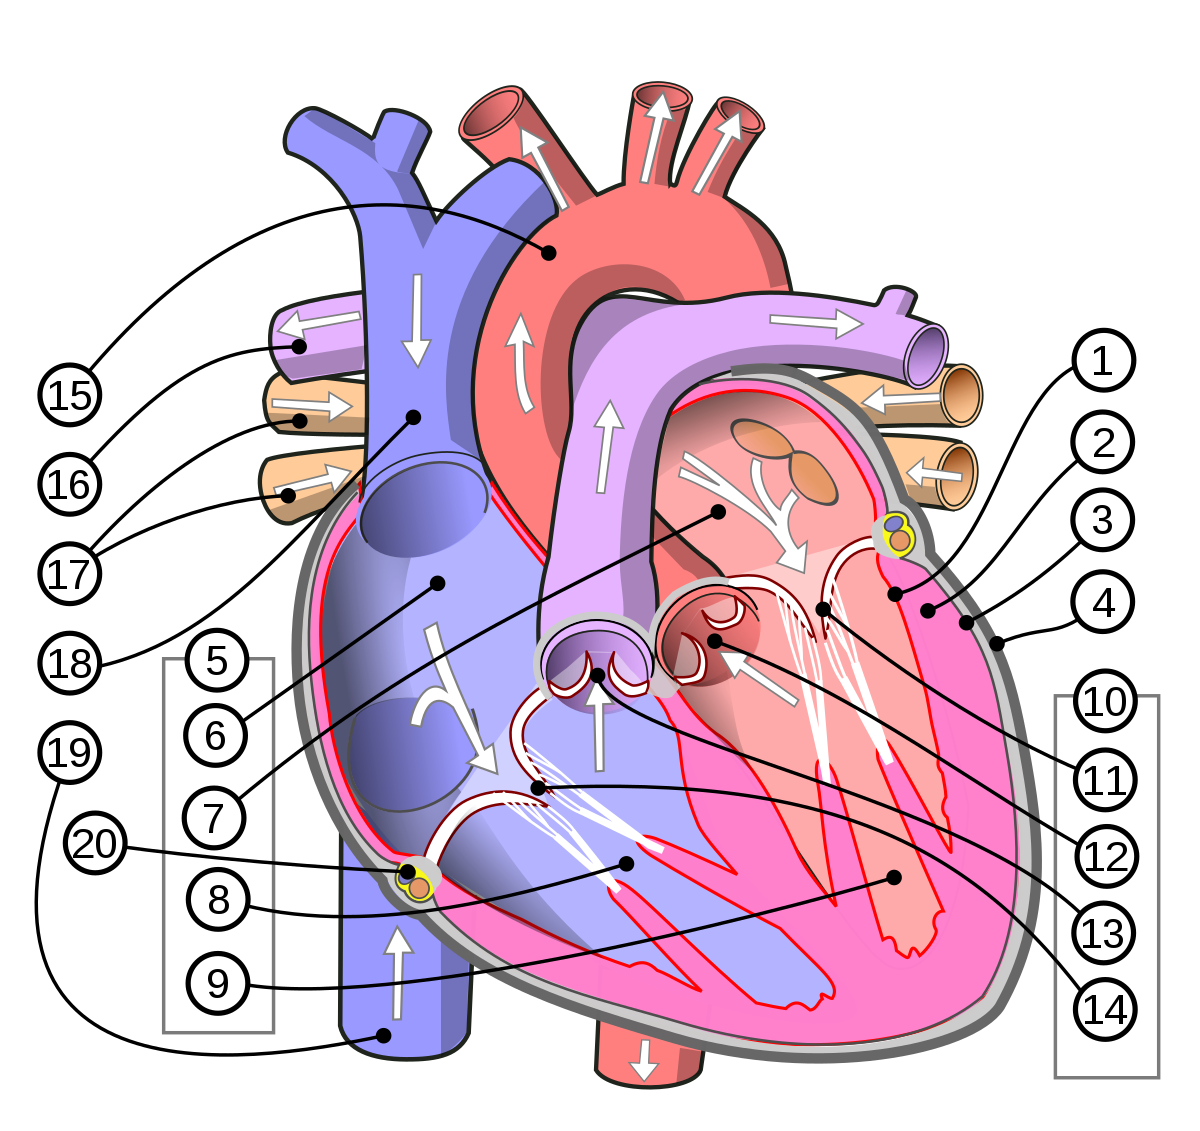 Venas pulmonares - Wikipedia, la enciclopedia libre